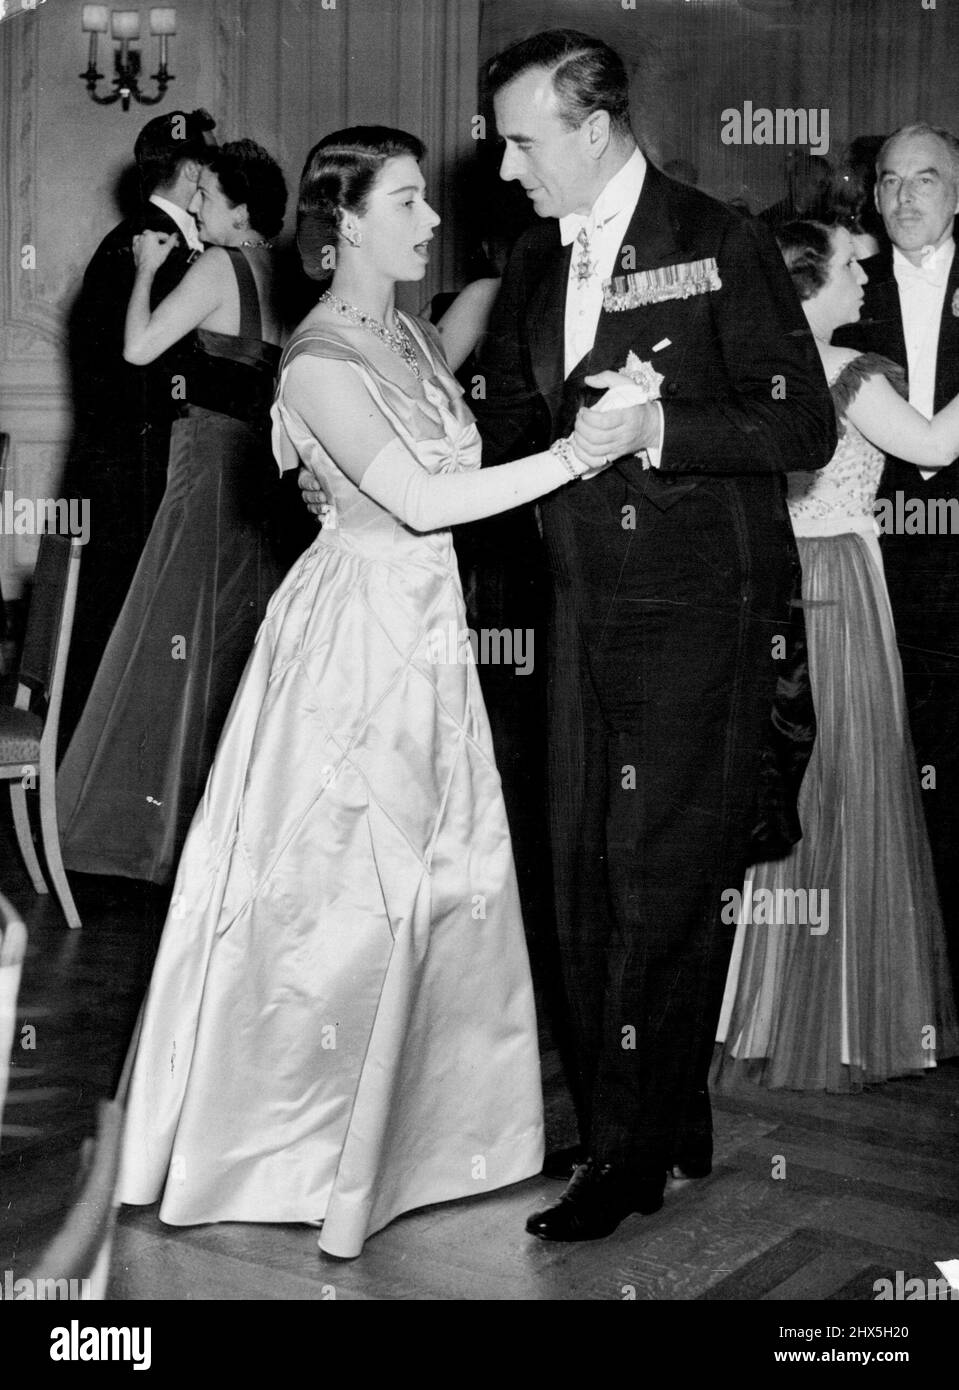 Prinz besucht Ball in Savoyen -- Prinzessin Elizabeth tanzt mit Lord Louis Mountbatten, als sie an einem Ball teilnahm, der im Savoyen zur Unterstützung des Bildungsfonds-Appells des Royal College of ***** stattfand Heute. Prinzessin Elizabeth war in ernsthafte Gespräche verwoben, als sie mit Earl Mount-Batten tanzte, als dieses Foto während des Balls in Savoy, London, aufgenommen wurde, um den Appell des Bildungsfonds des Royal College of Nursing letzte Woche zu unterstützen. 03. Juli 1951. Stockfoto